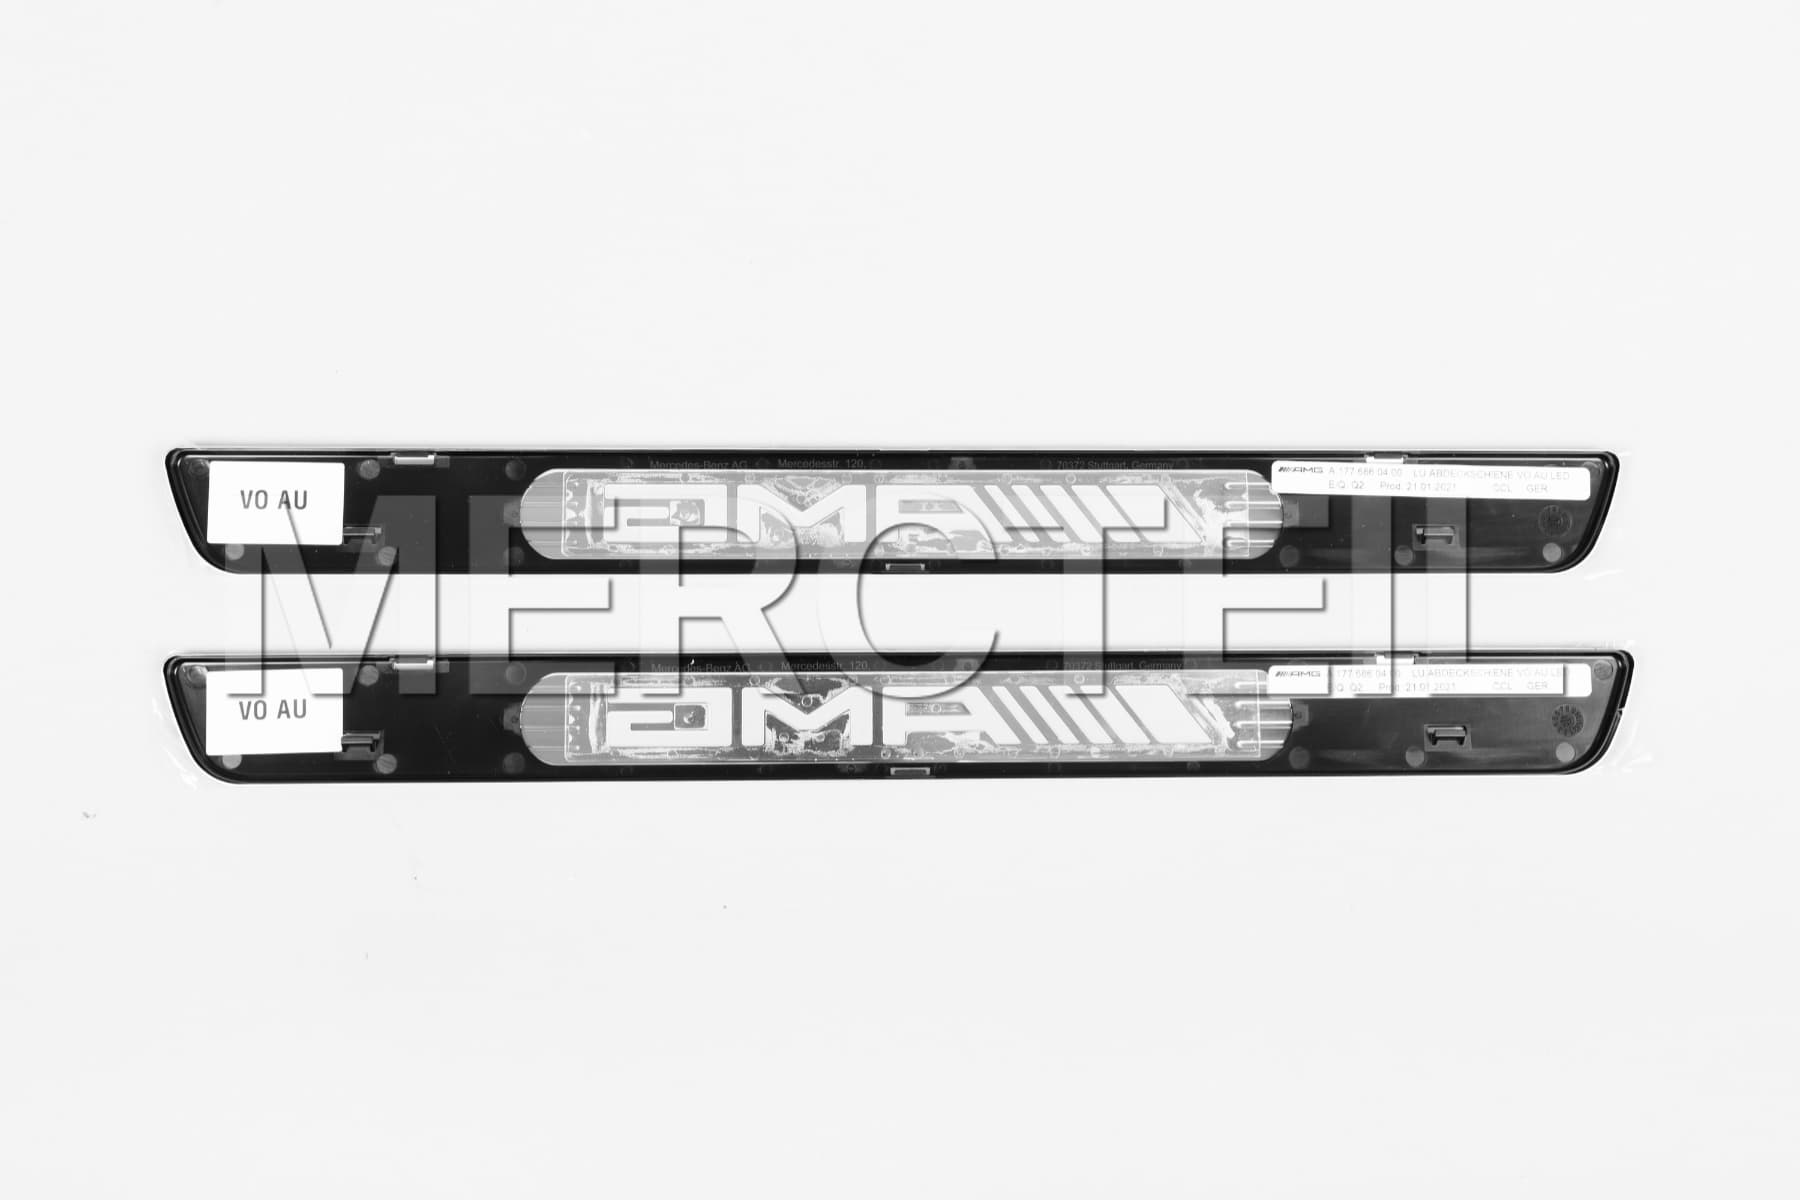 AMG Silberne Wechselcover für Beleuchtete Einstiegsleiste Original Mercedes Benz (Teilenummer: A1776804307)